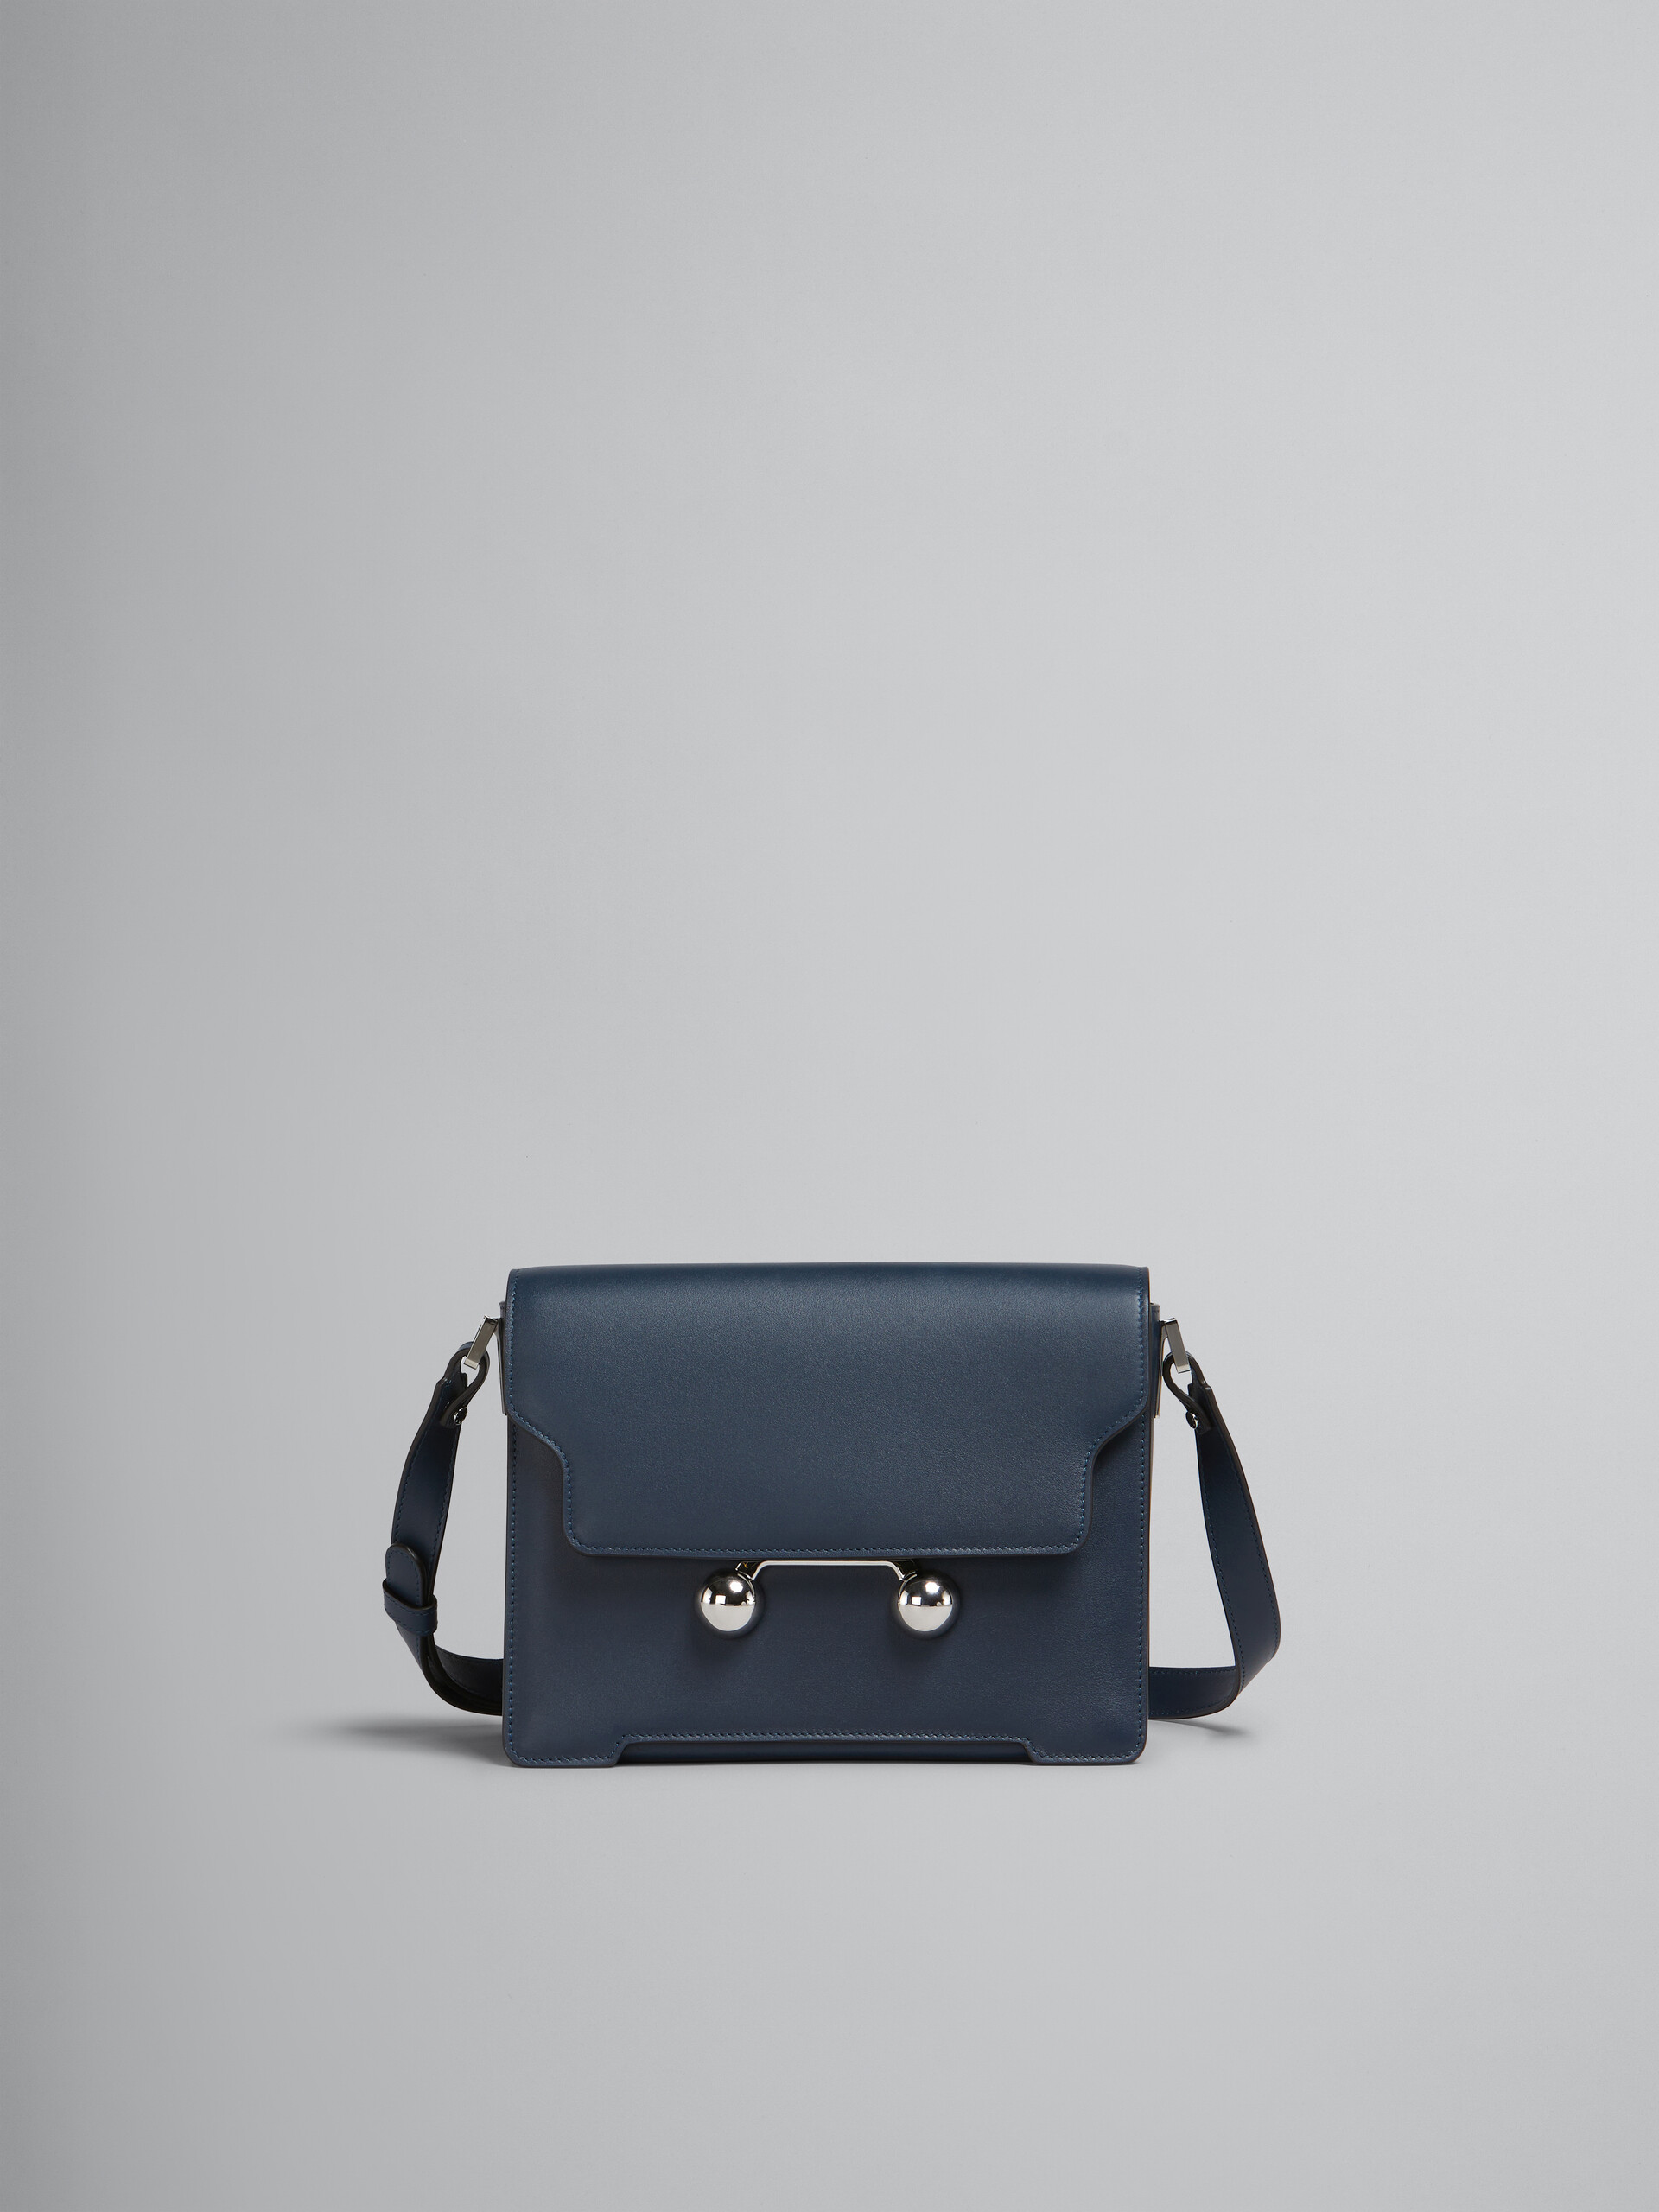 Deep blue leather Trunkaroo medium shoulder bag - Shoulder Bag - Image 1